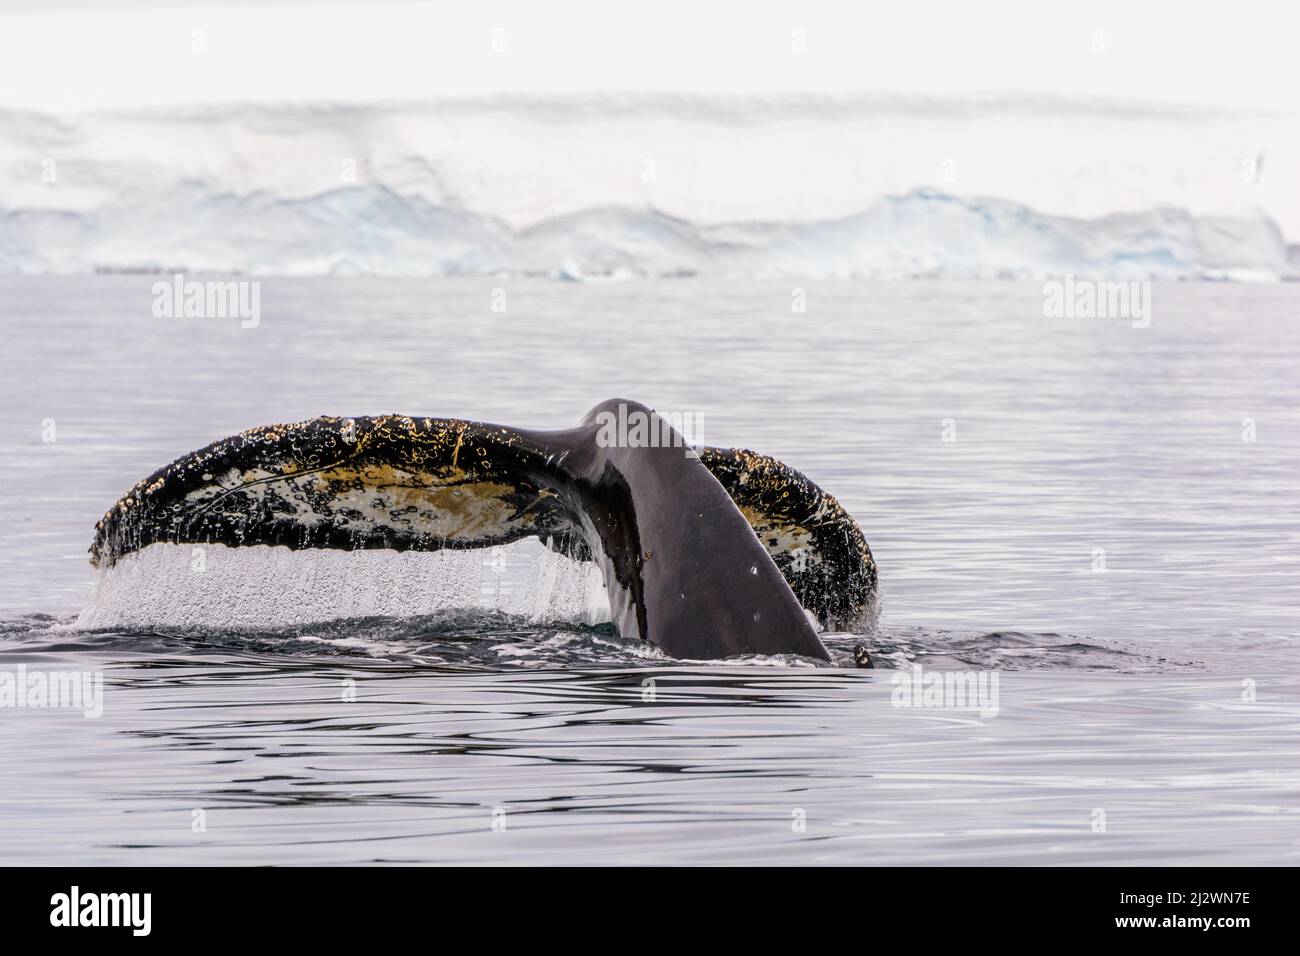 la cola de una ballena jorobada (Megaptera novaeangliae) visible sobre el agua mientras la ballena se sumerge, tomada en la Bahía Wilhelmina, Península Antártica Foto de stock